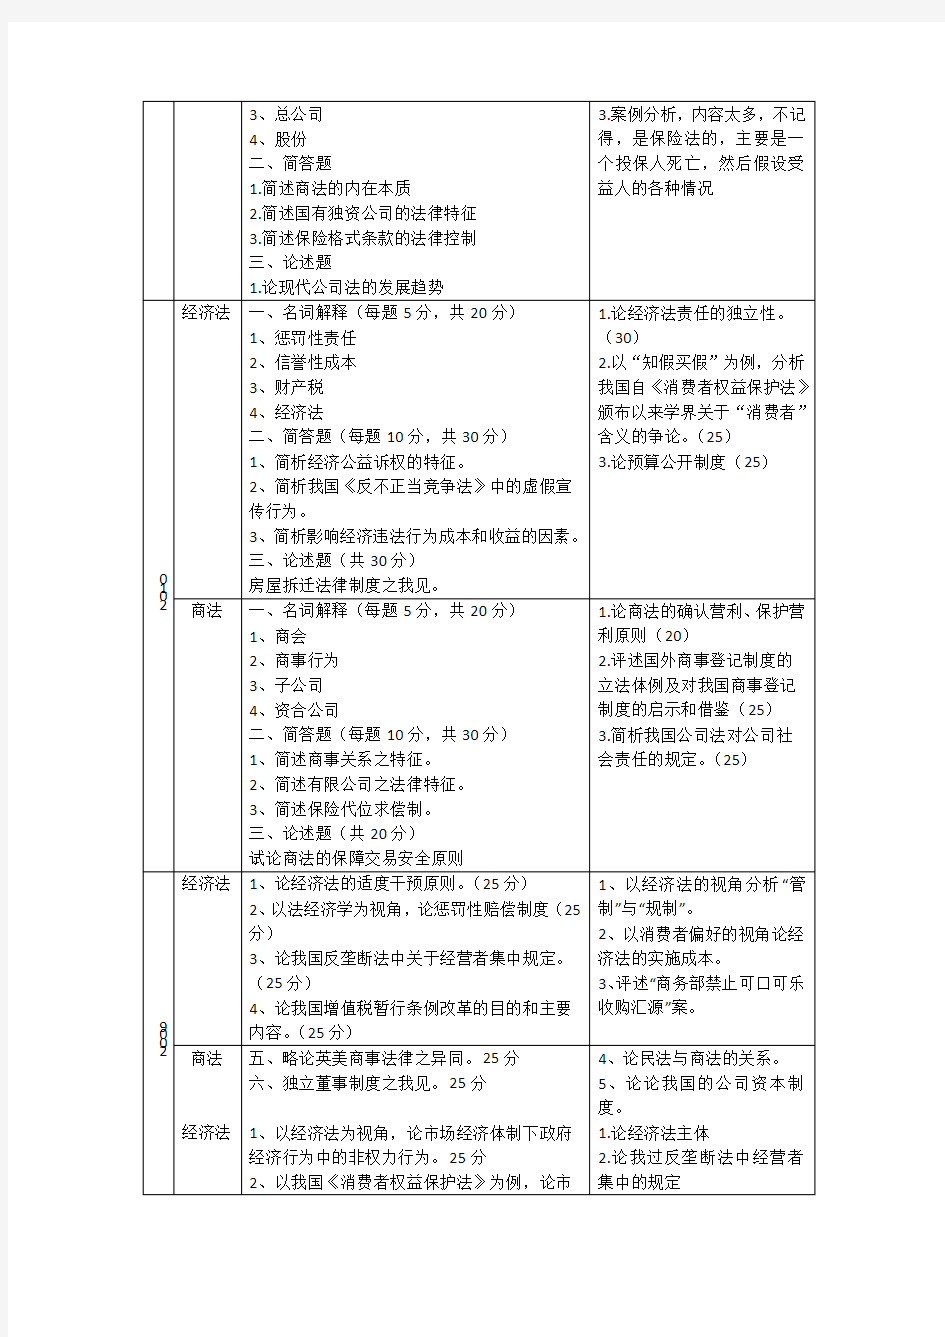 中南财经政法大学 考研 经济法 历年真题(初试、复试)